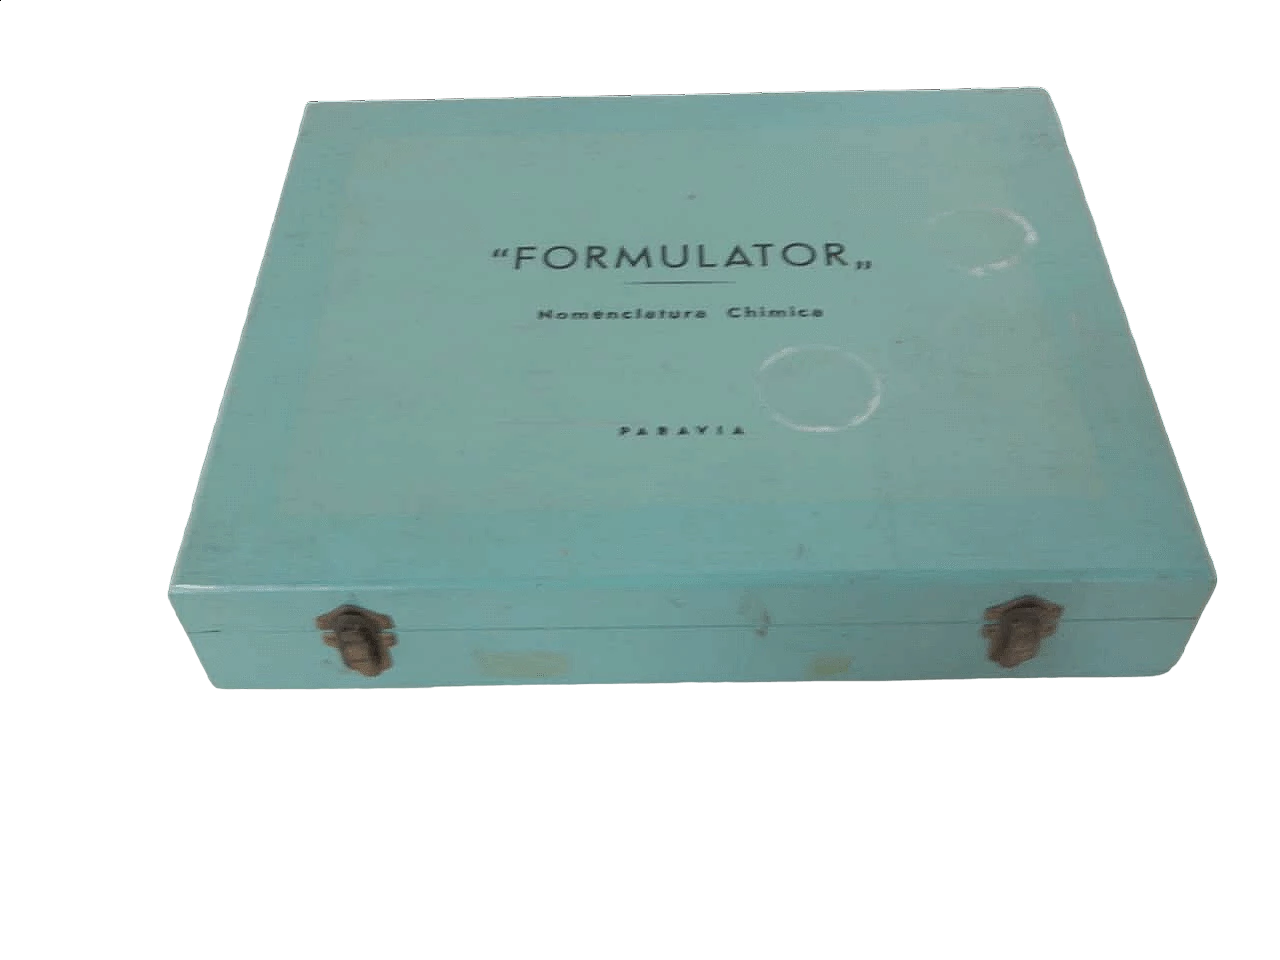 Cassetta di nomenclatura chimica Formulator per Paravia, 1948 13